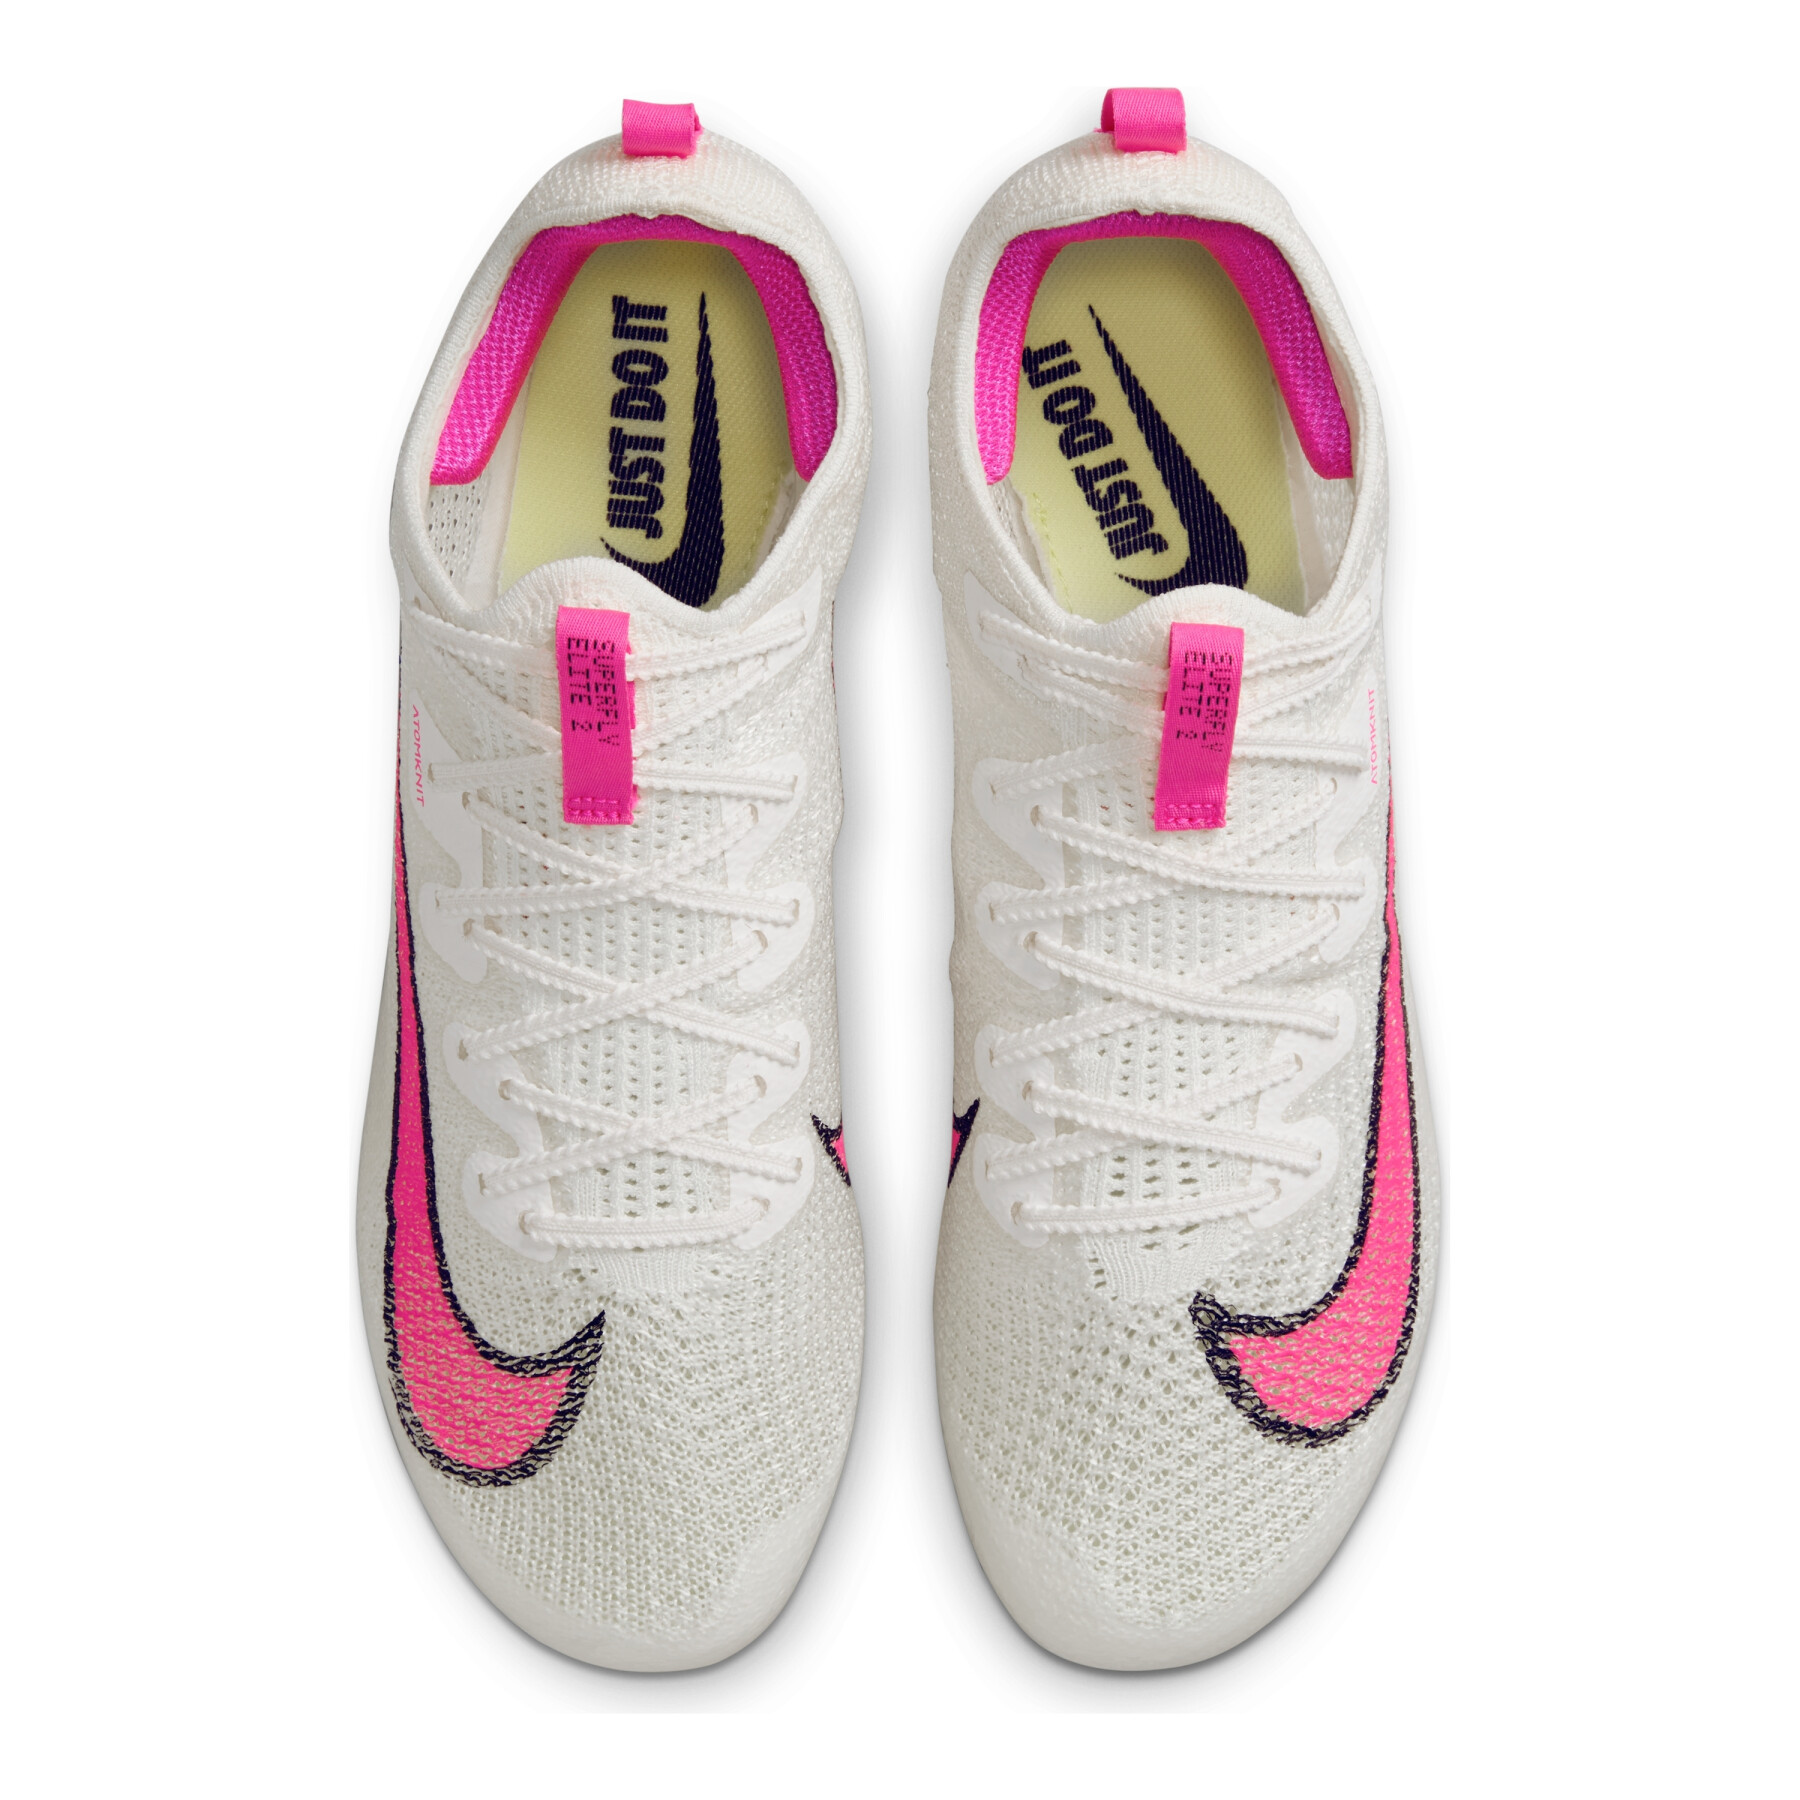 Zapatillas de atletismo Nike Zoom Superfly Elite 2